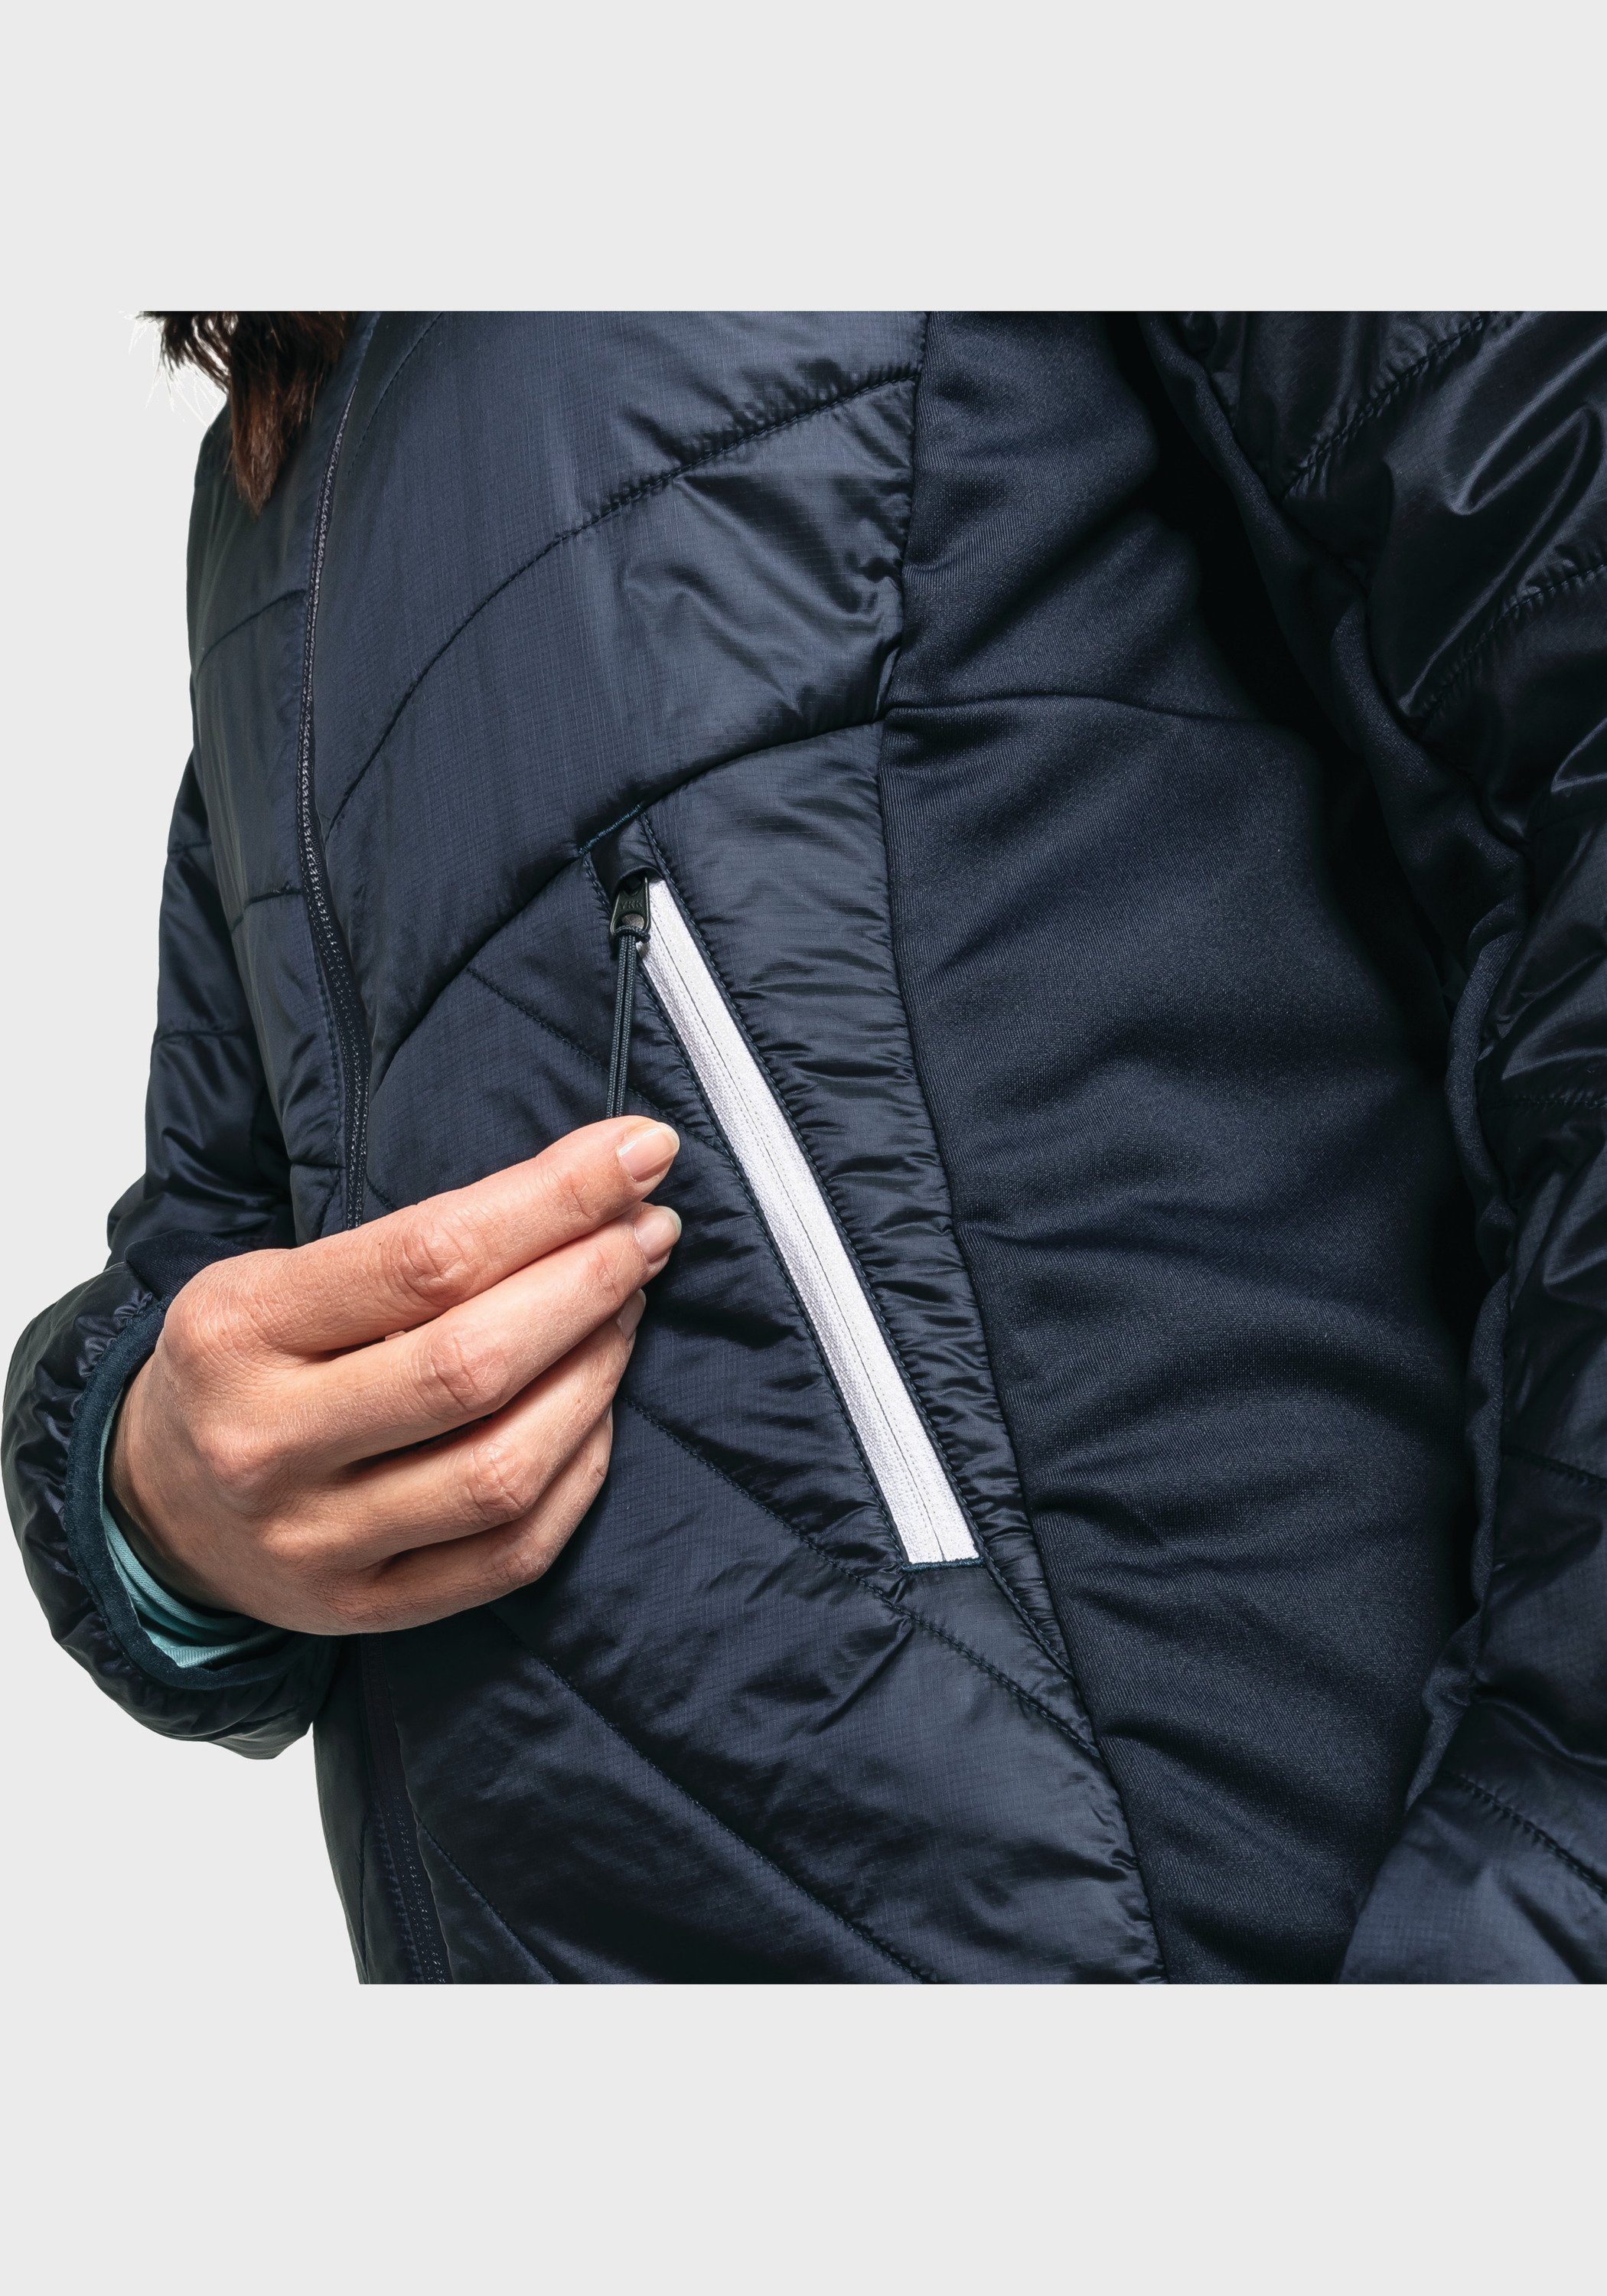 Stams Hybrid Schöffel blau L Outdoorjacke Jacket